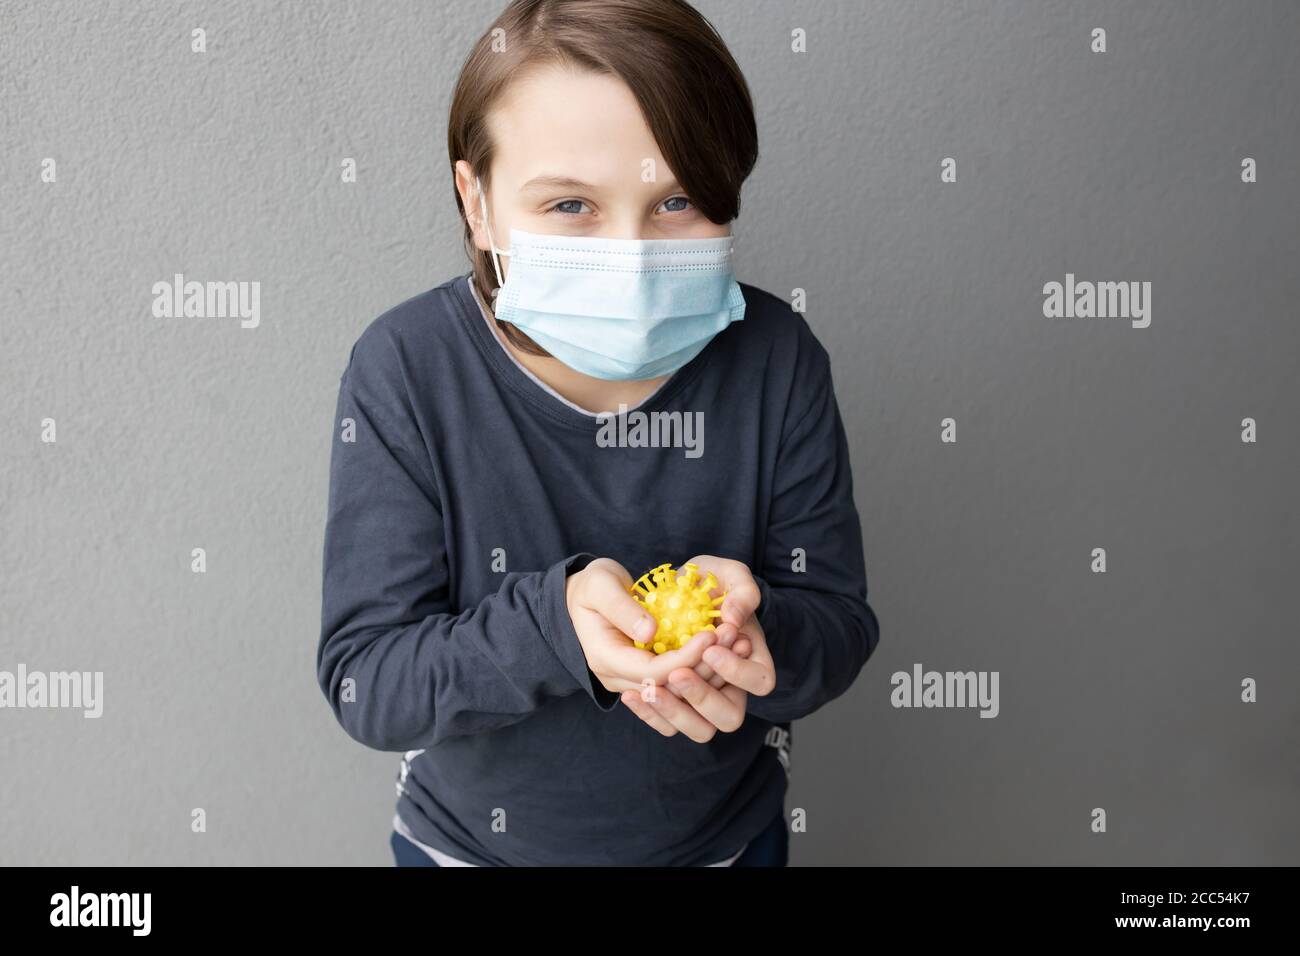 Niño caucásico joven con una máscara quirúrgica azul y sujeción Un modelo de virus de corona durante la pandemia de COVID-19 Foto de stock